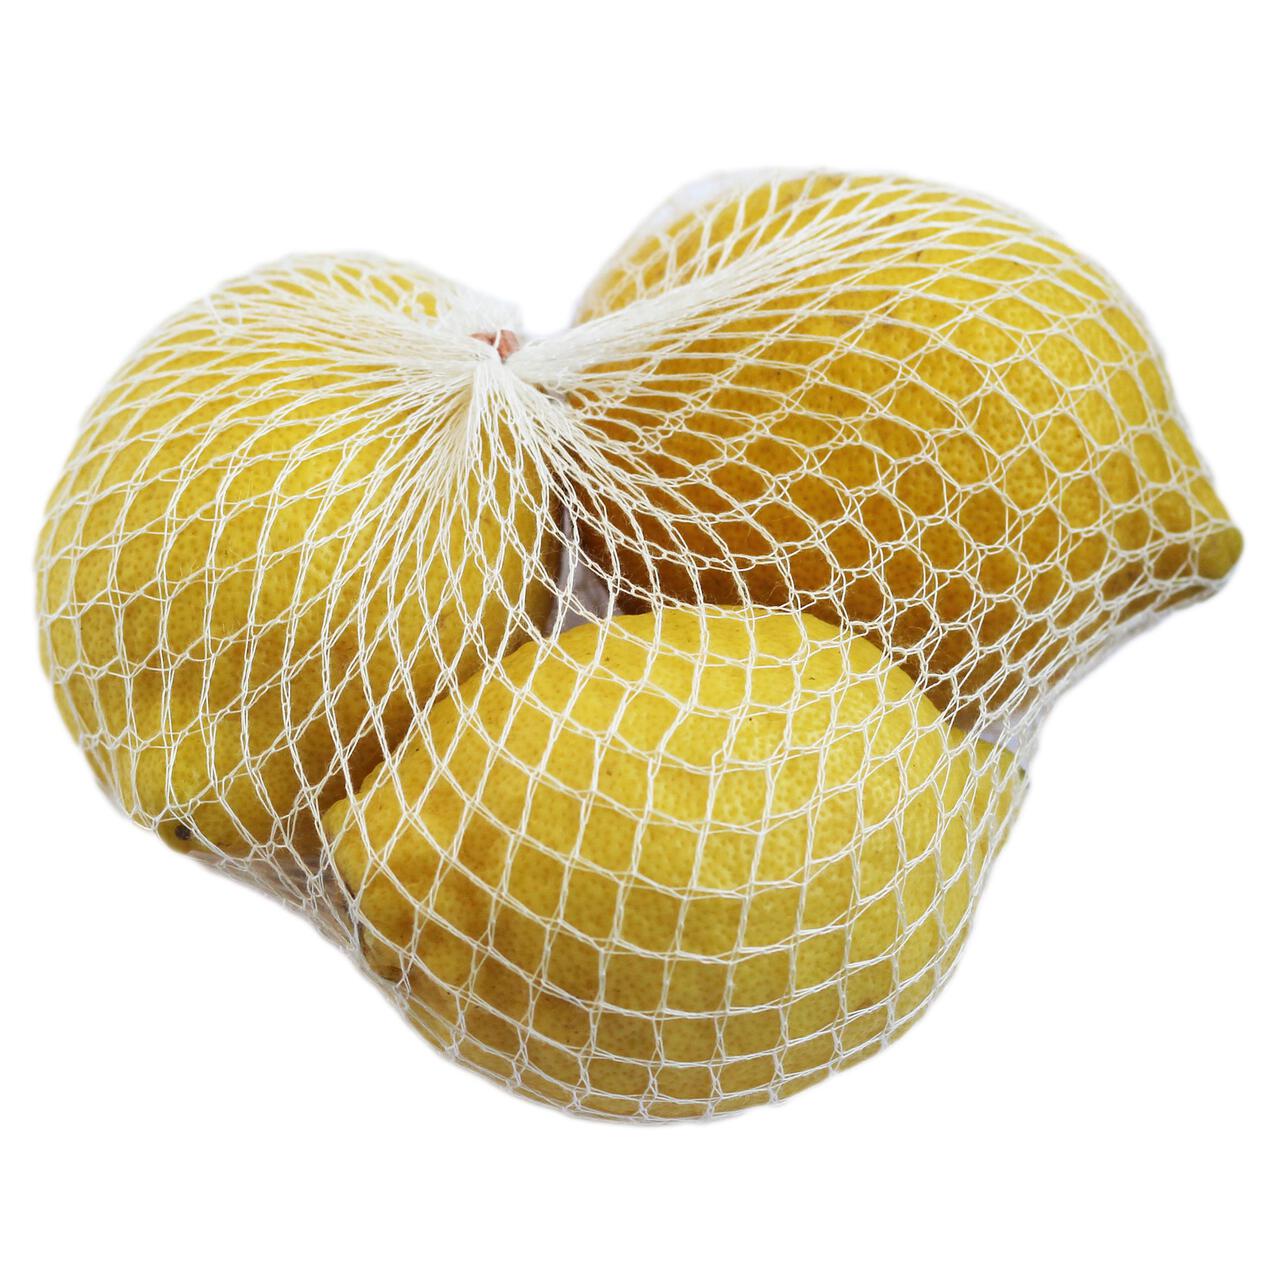 Wholegood Organic Unwaxed Lemons 3 per pack